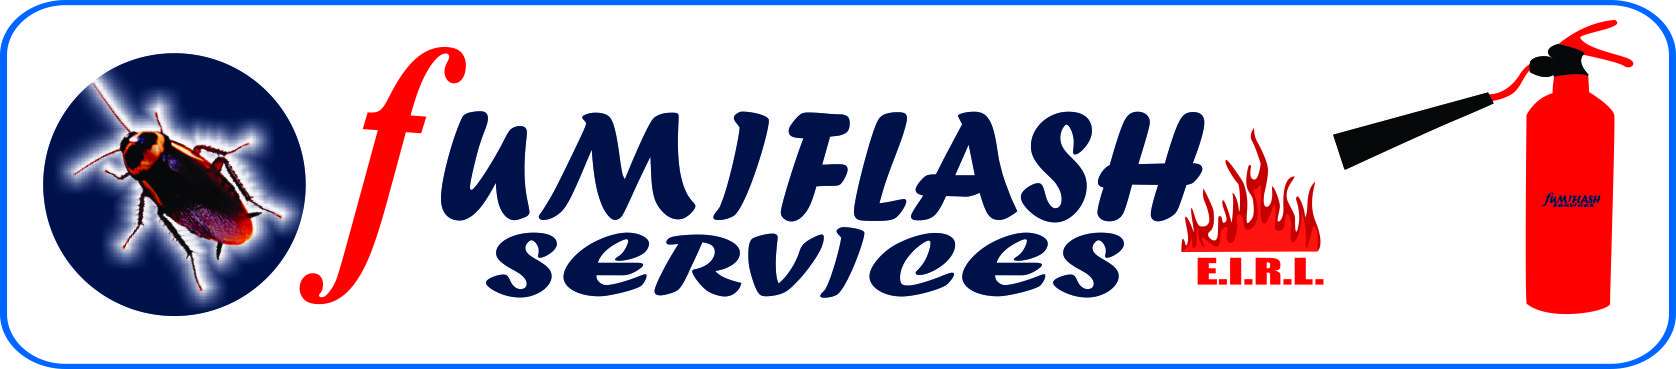 Fumiflash Services E.I.R.L.